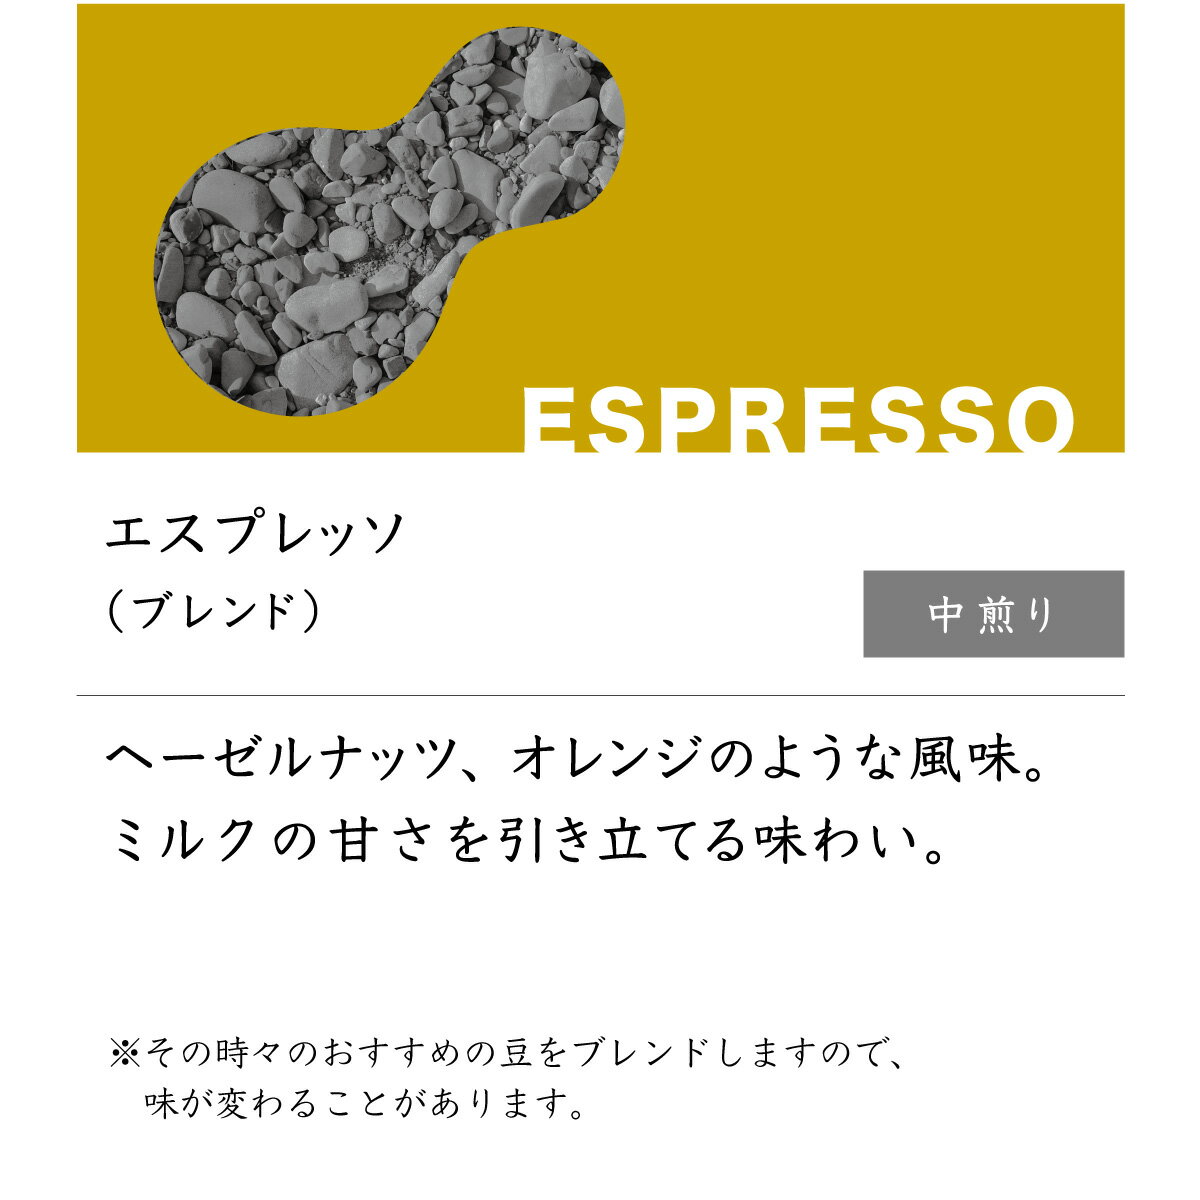 トートコーヒー『エスプレッソ』